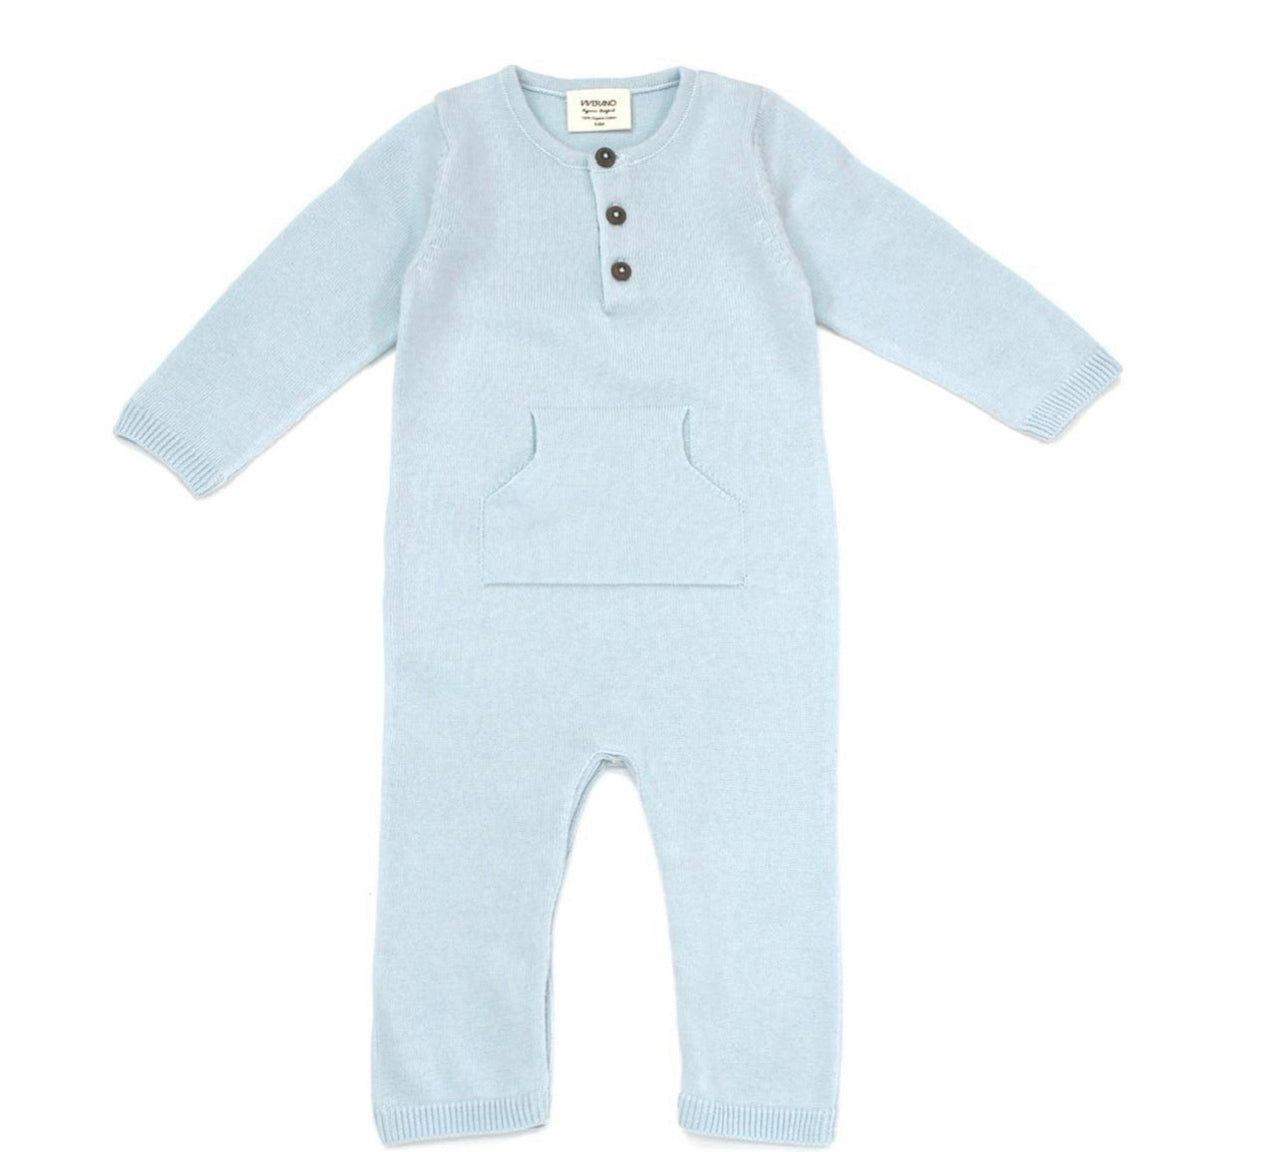 Milan Pastel Kangaroo Pocket Baby
Jumpsuit